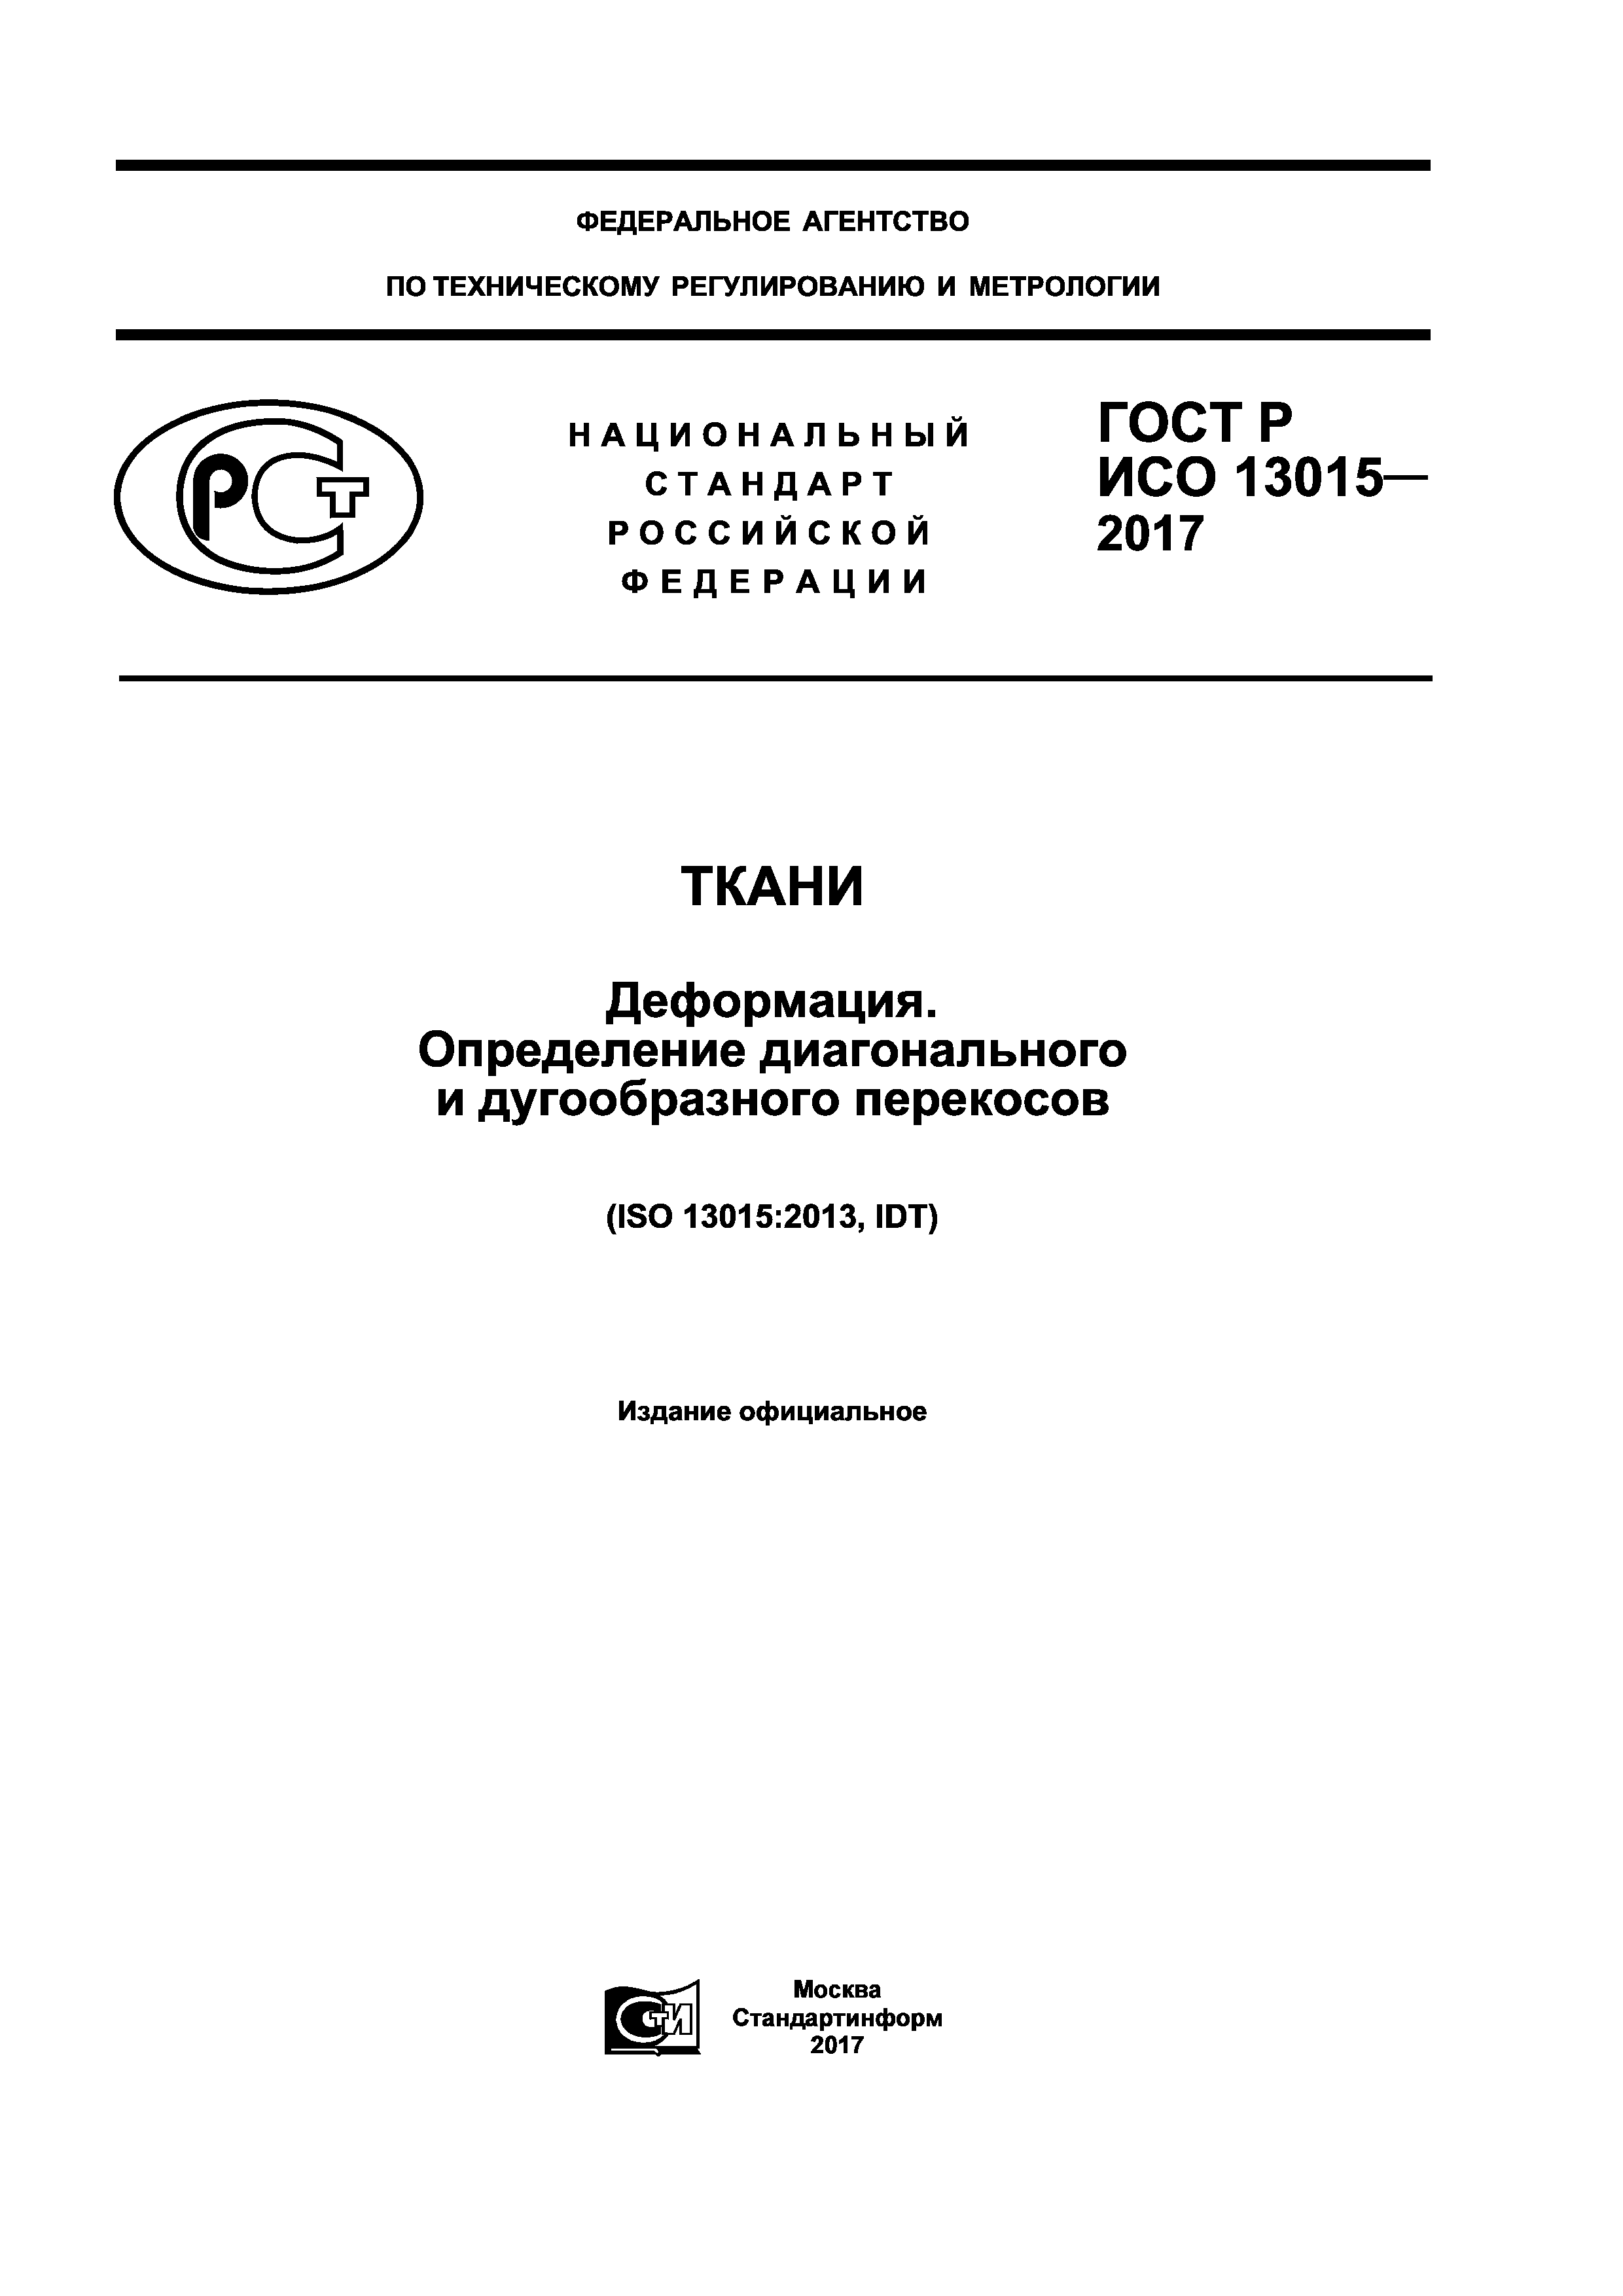 ГОСТ Р ИСО 13015-2017